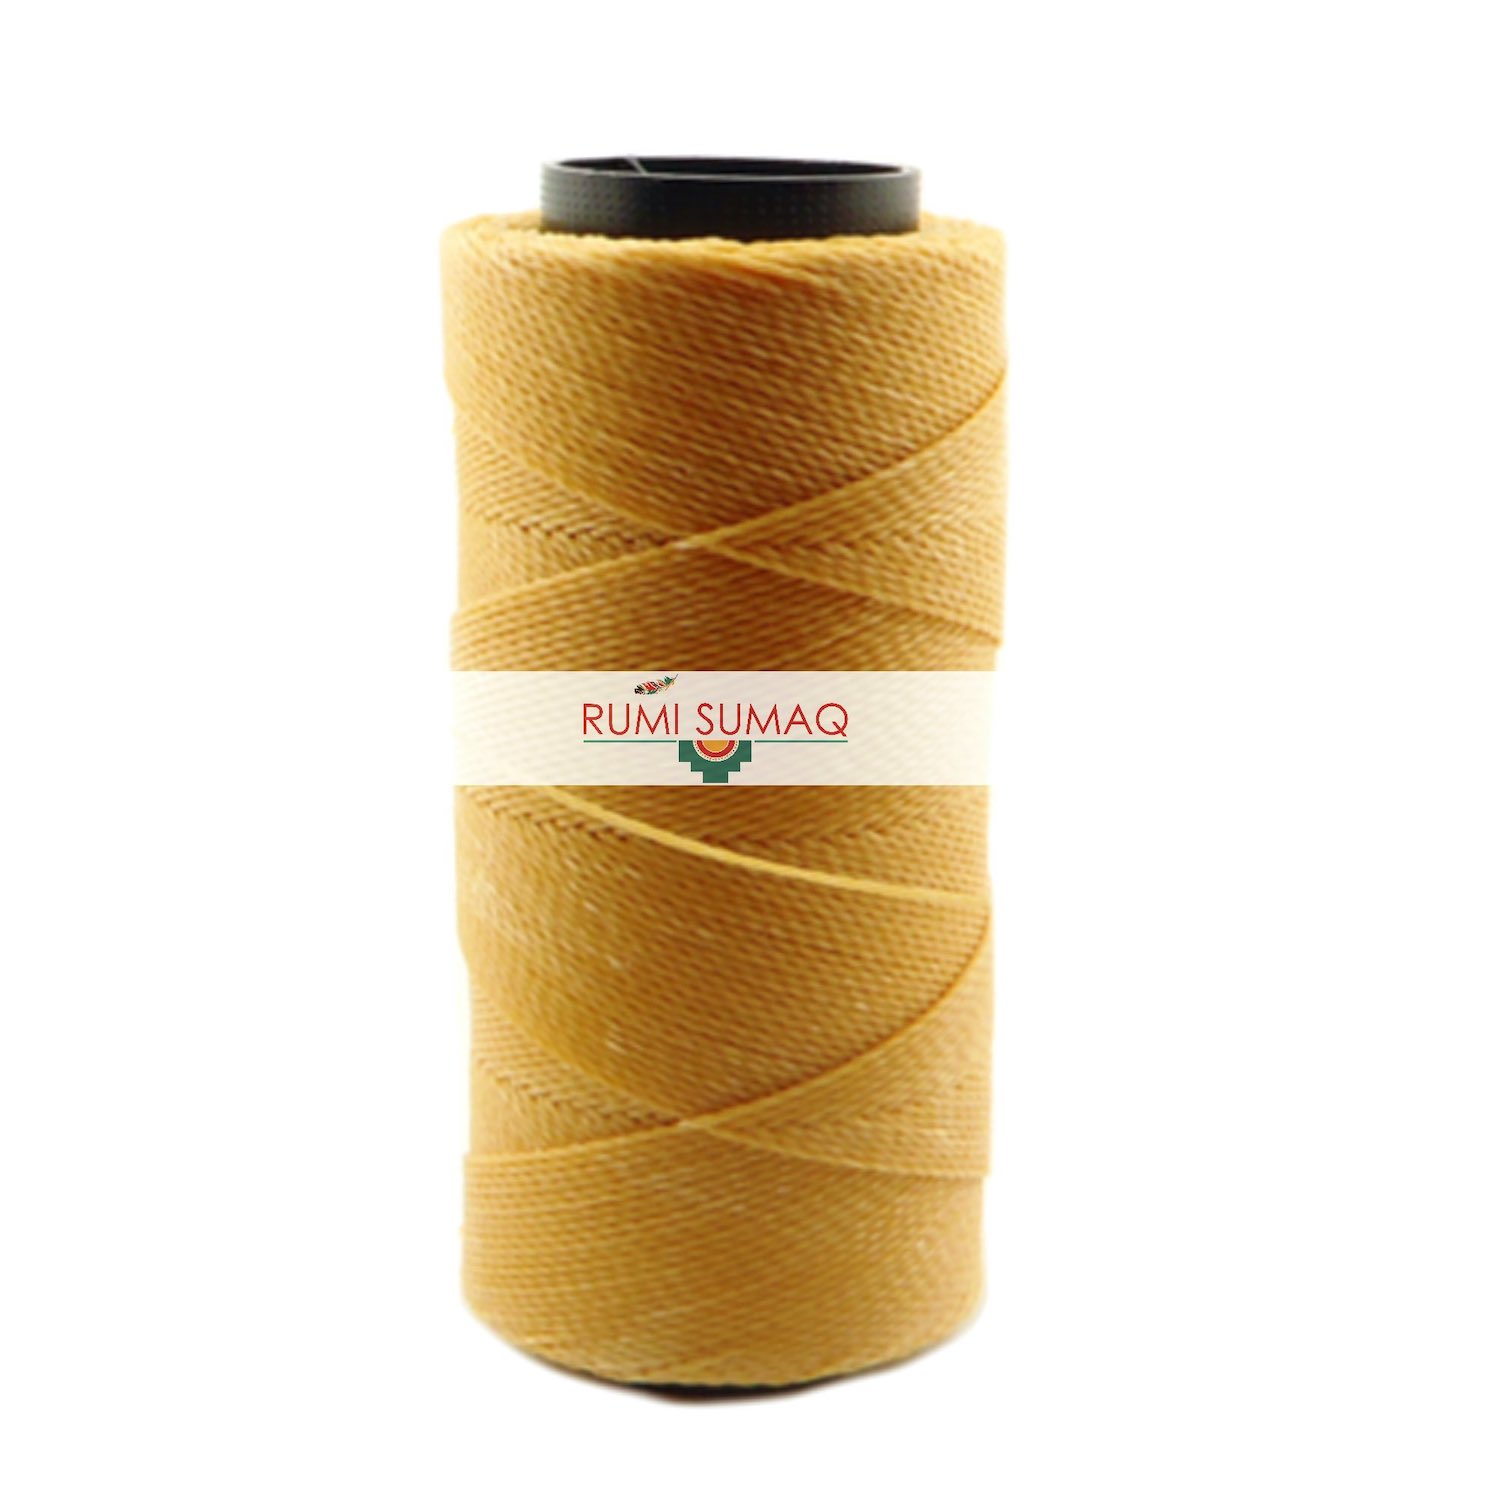 Settanyl 01-283 Waxed Polyester Cord 1mm Waxed Thread | RUMI SUMAQ Brazilian Macrame Cords